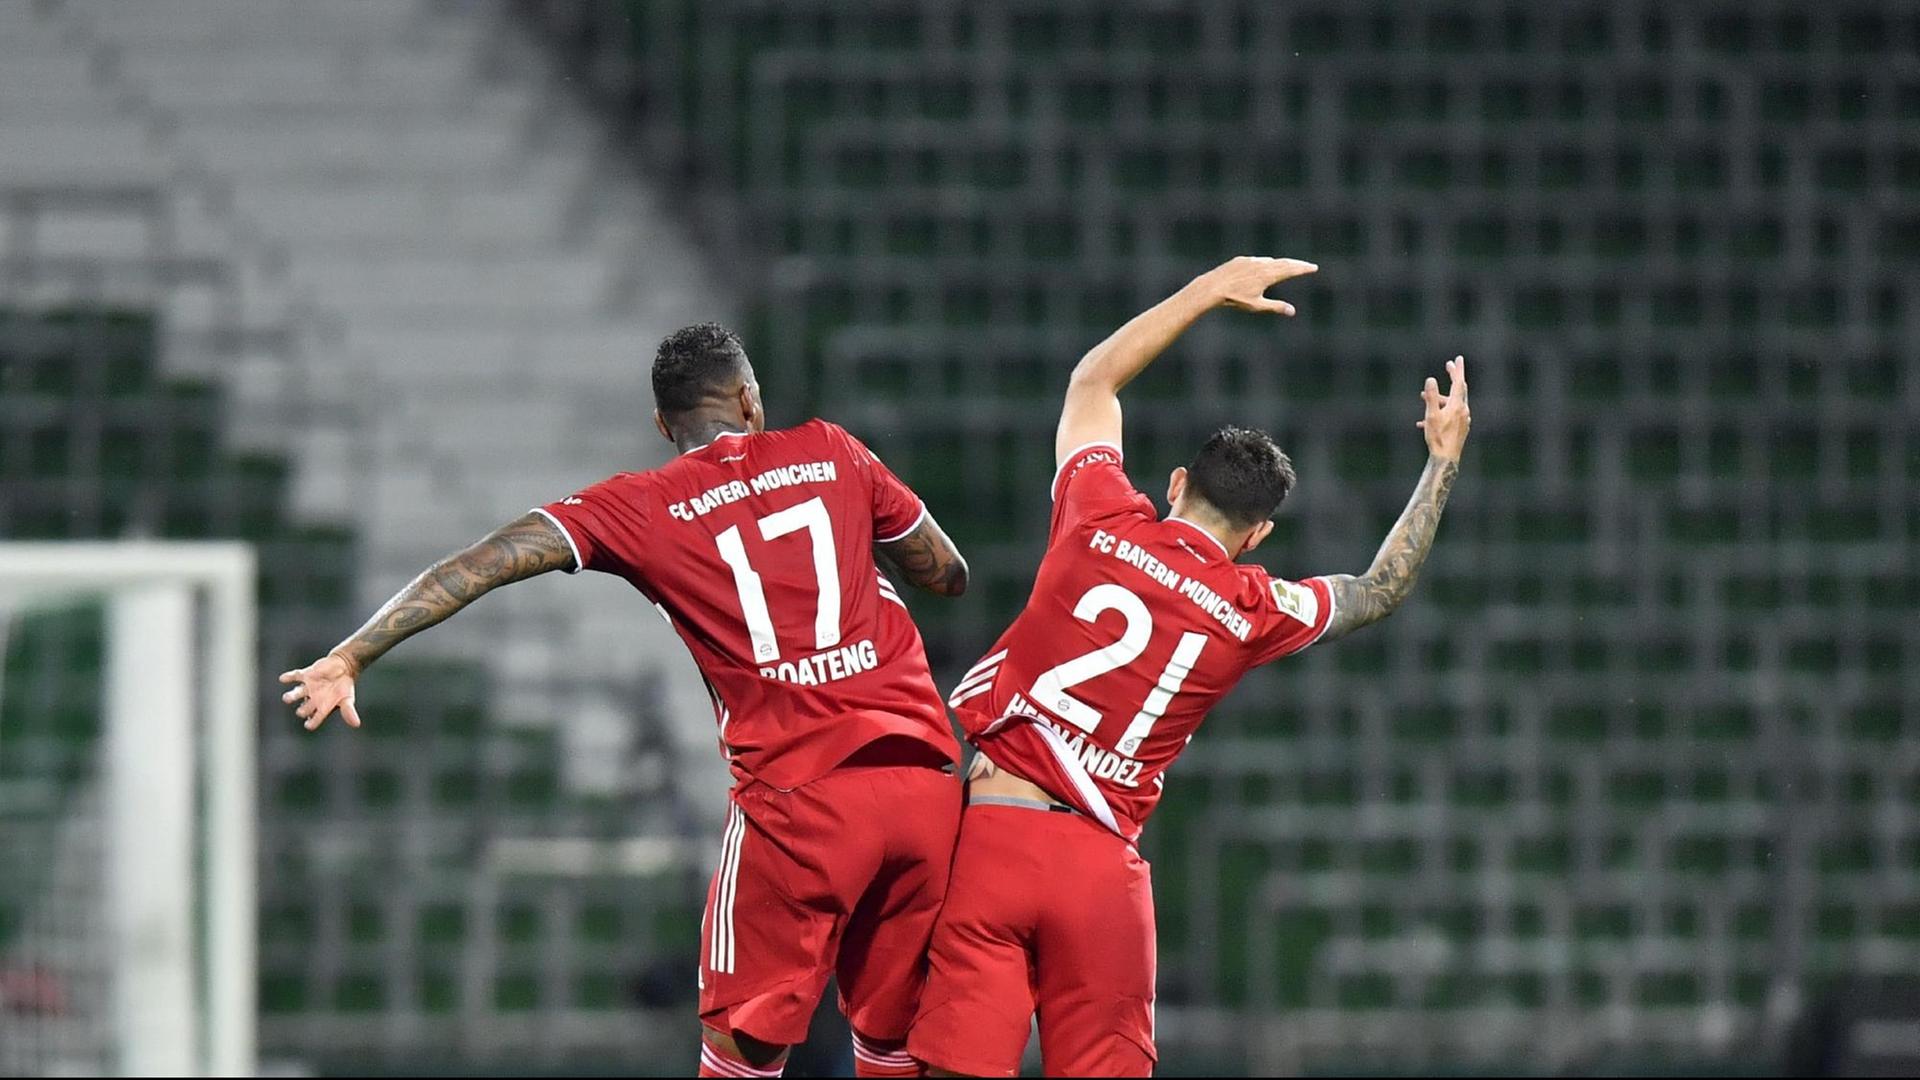 Fußball-Bundesligist Bayern München ist zum 30. Mal deutscher Meister. Jerome Boateng (l) und Lucas Hernandez feiern ihren Sieg, indem sie ihre Hüften aneinanderstoßen.